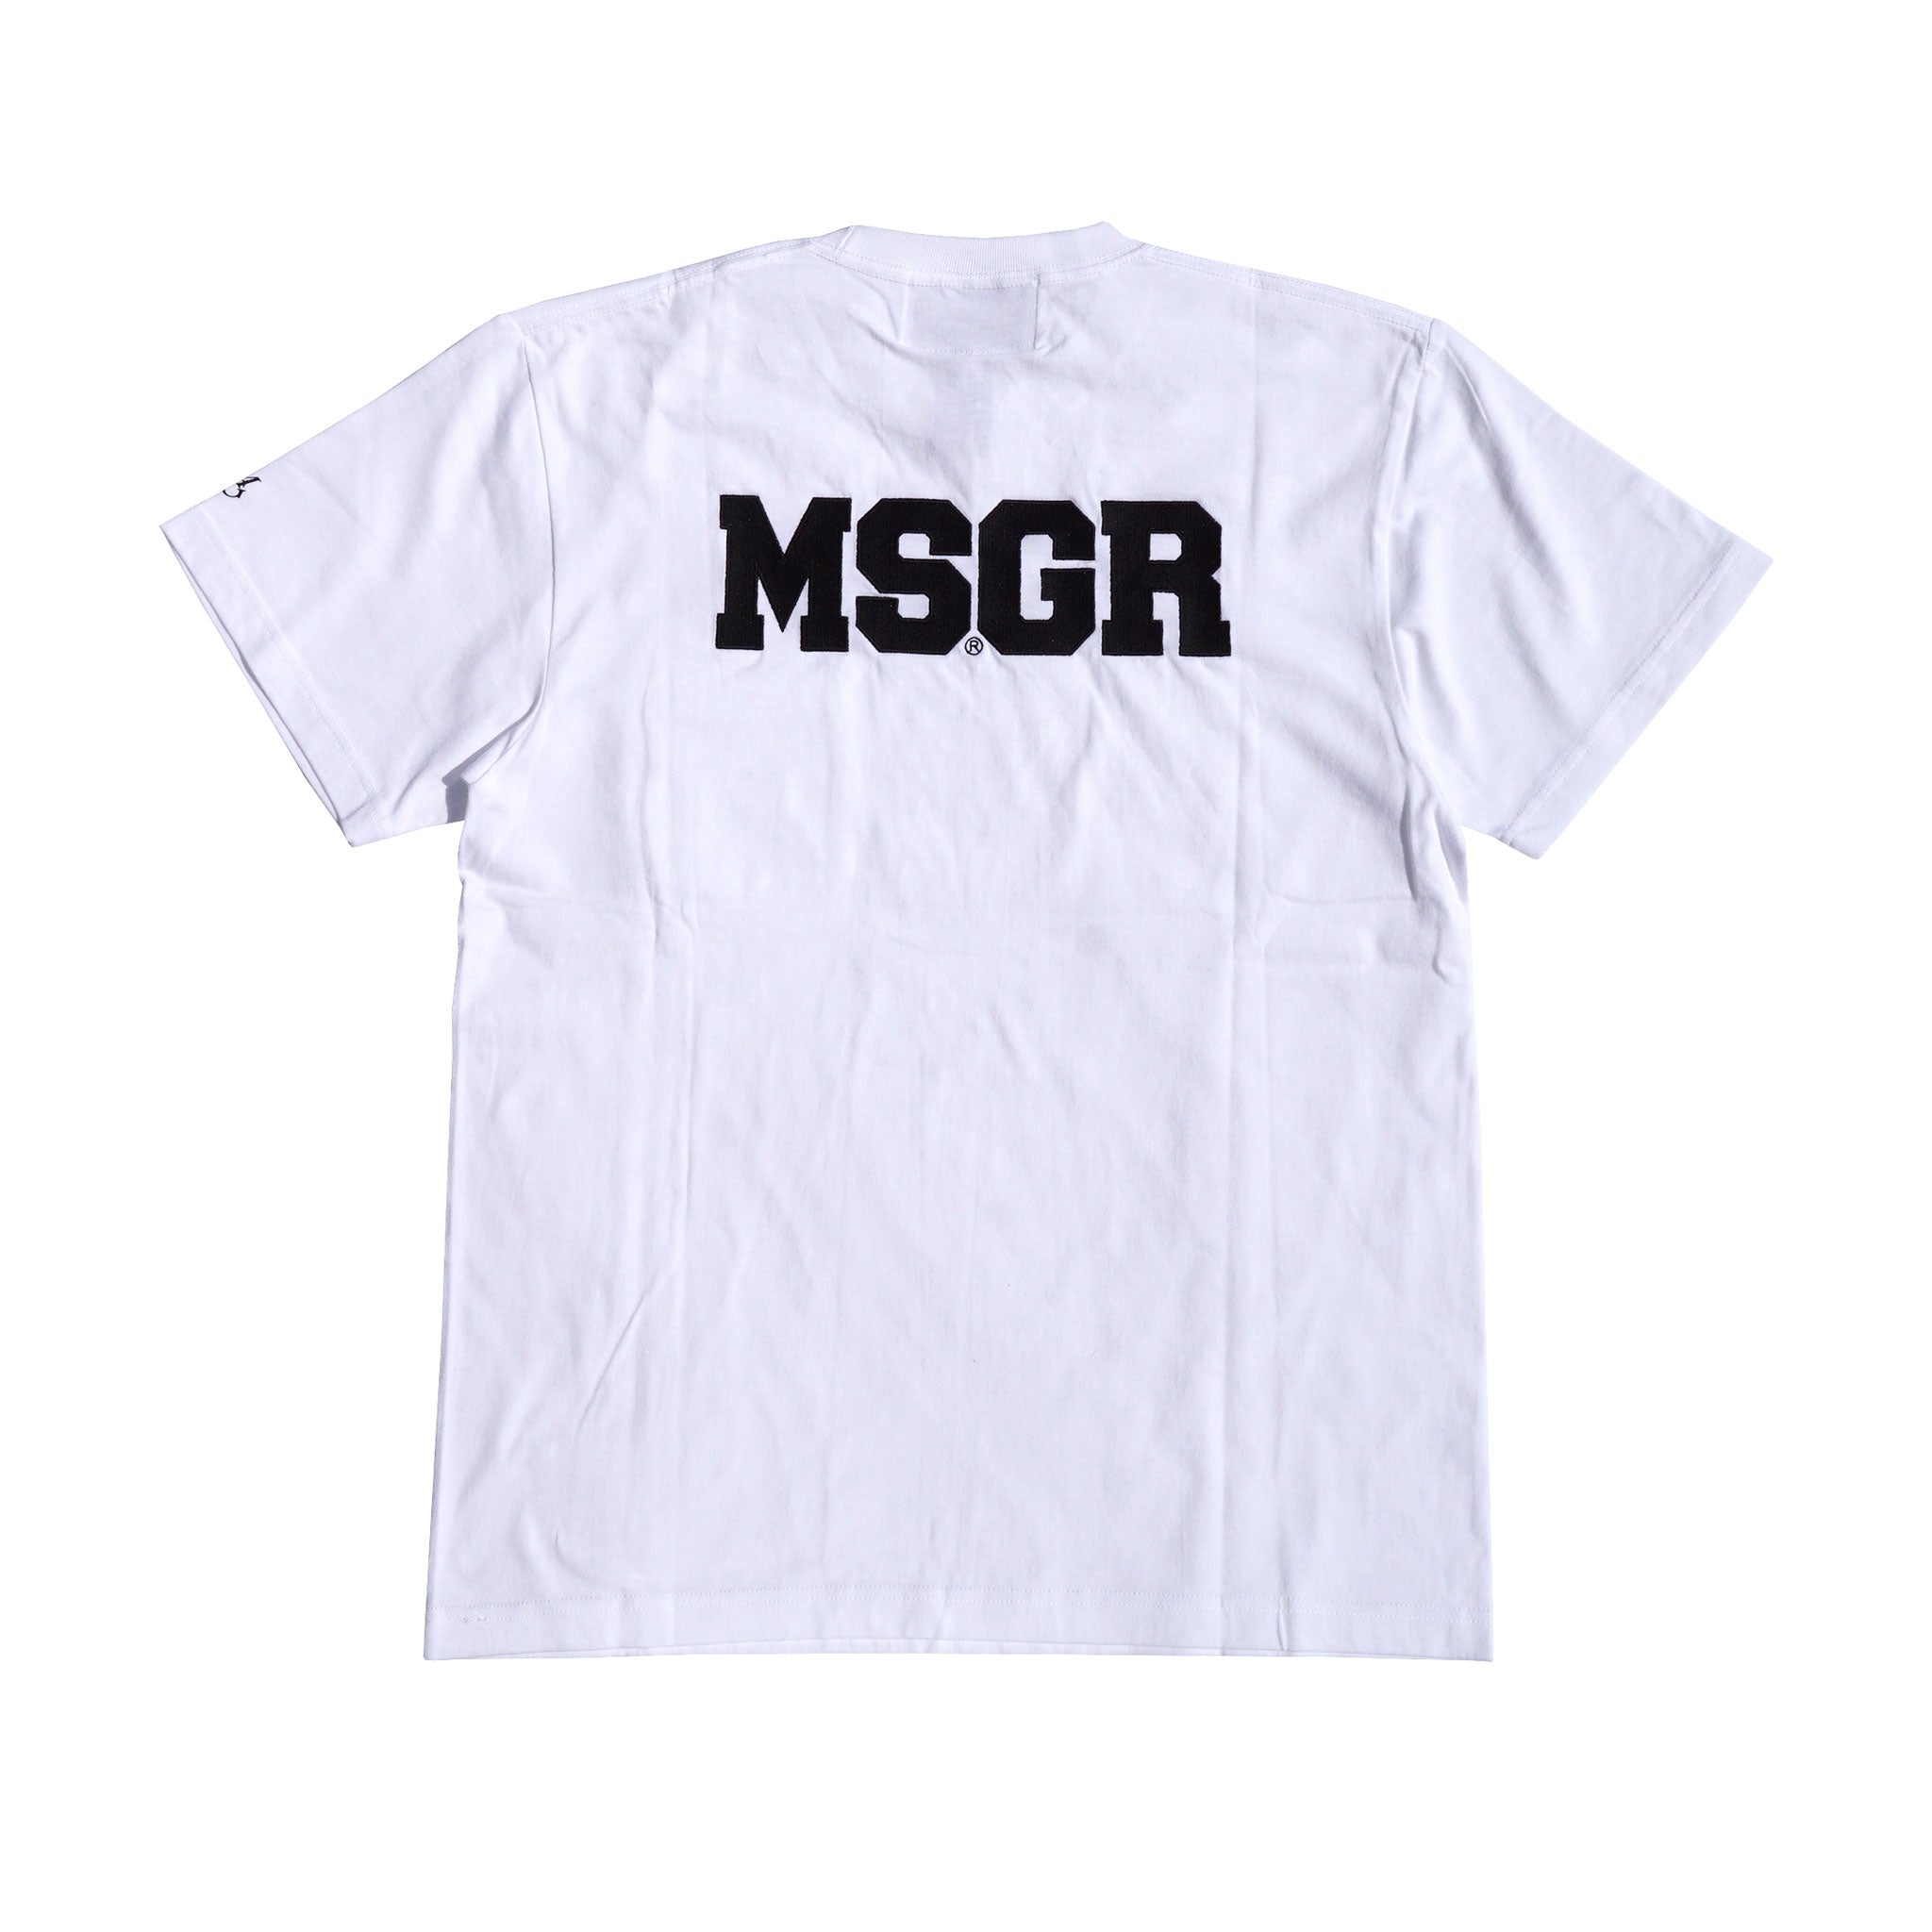 MSGR Tシャツ / 28 LOGO EMB POCKET TEE